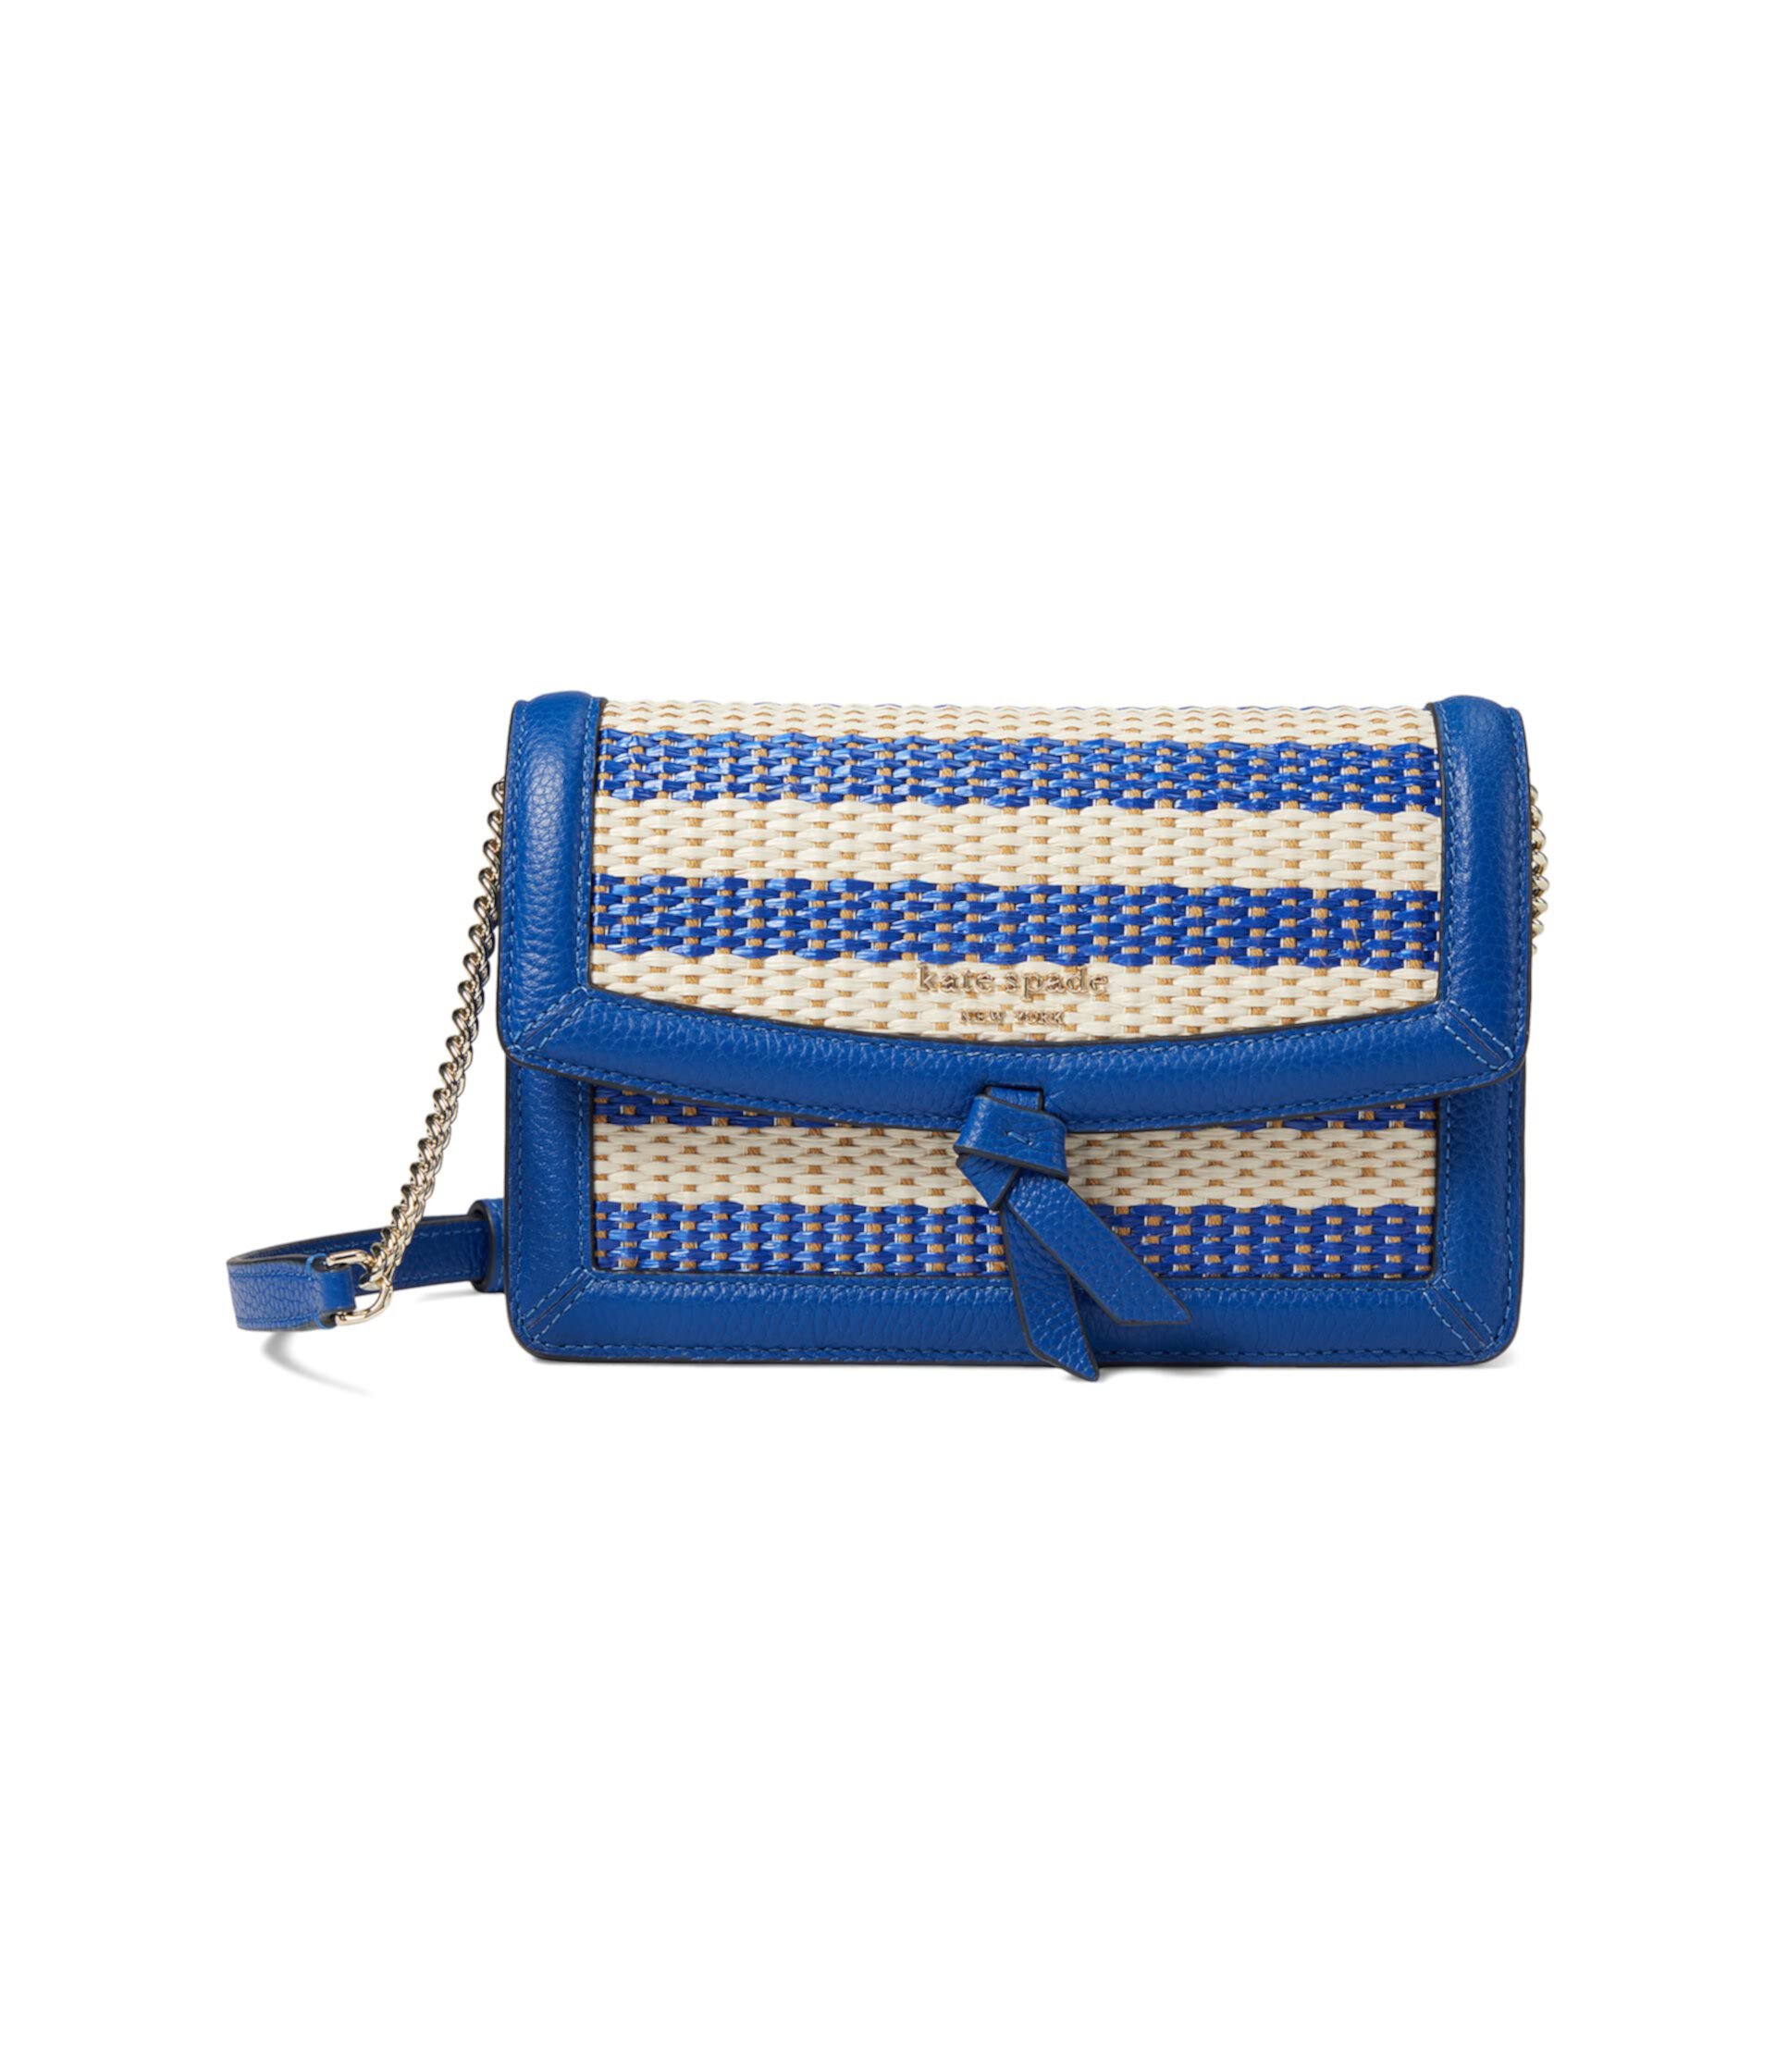 Полосатая сумка через плечо Knott из плетеной ткани с клапаном Kate Spade New York